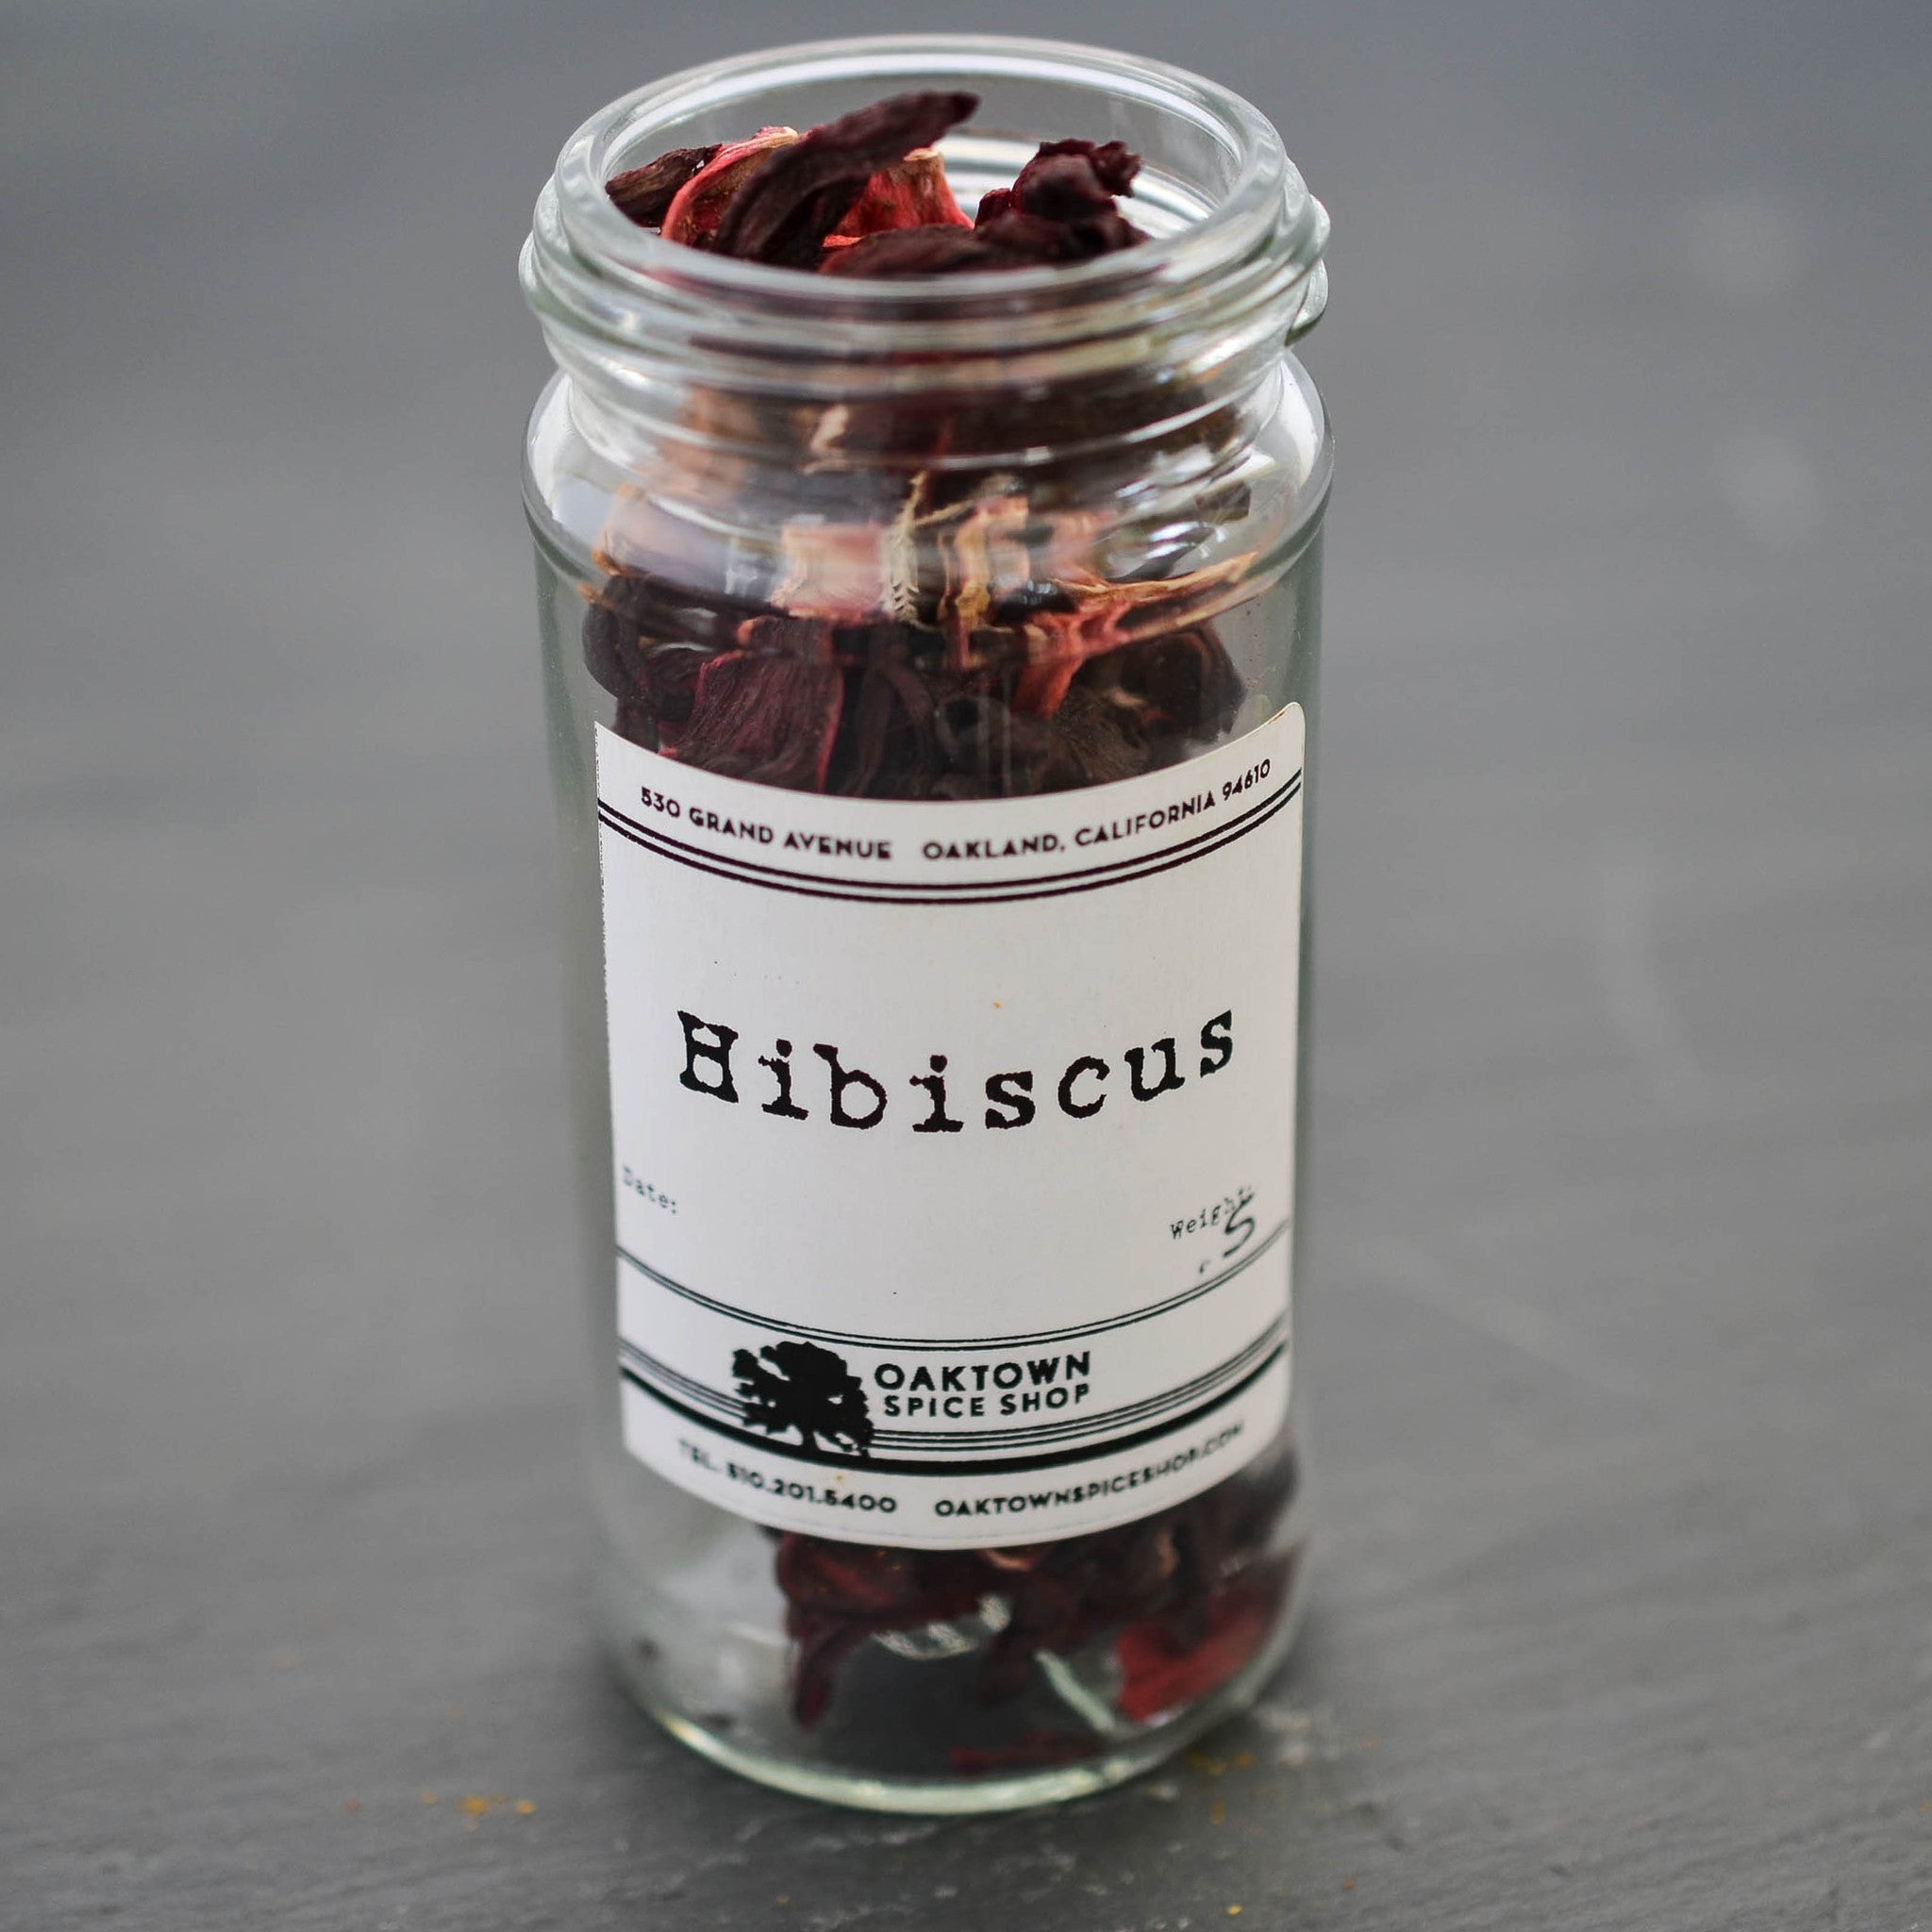 Hibiscus (Organic)